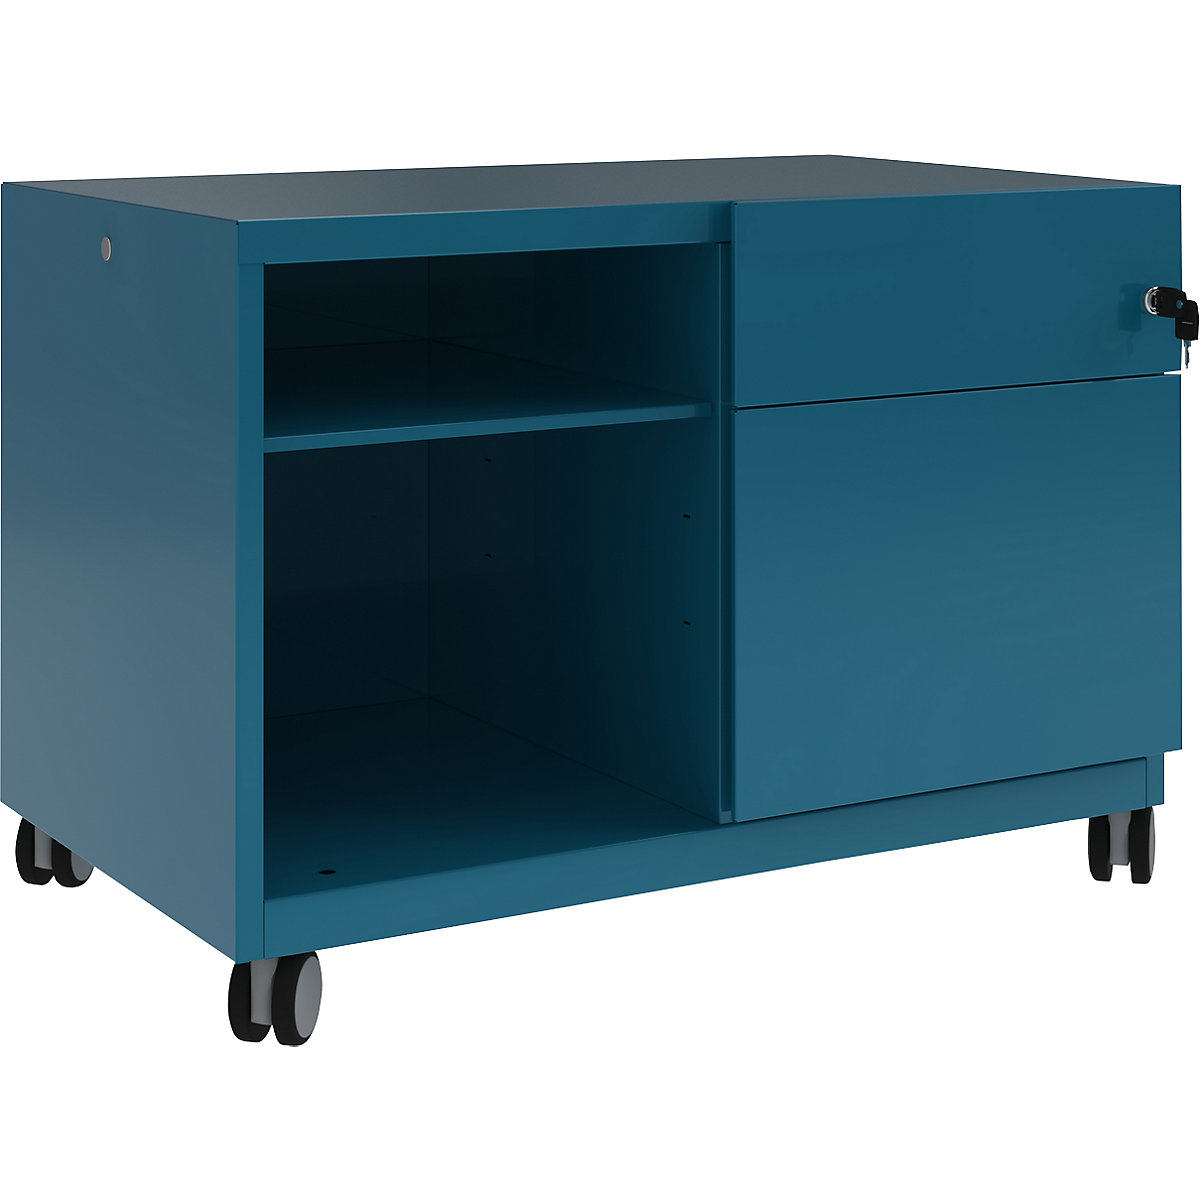 Omarica Note™ CADDY, VxŠxG 563 x 800 x 490 mm – BISLEY, desno 1 univerzalni predal in predal za obešalne mape, azurno modre barve-7